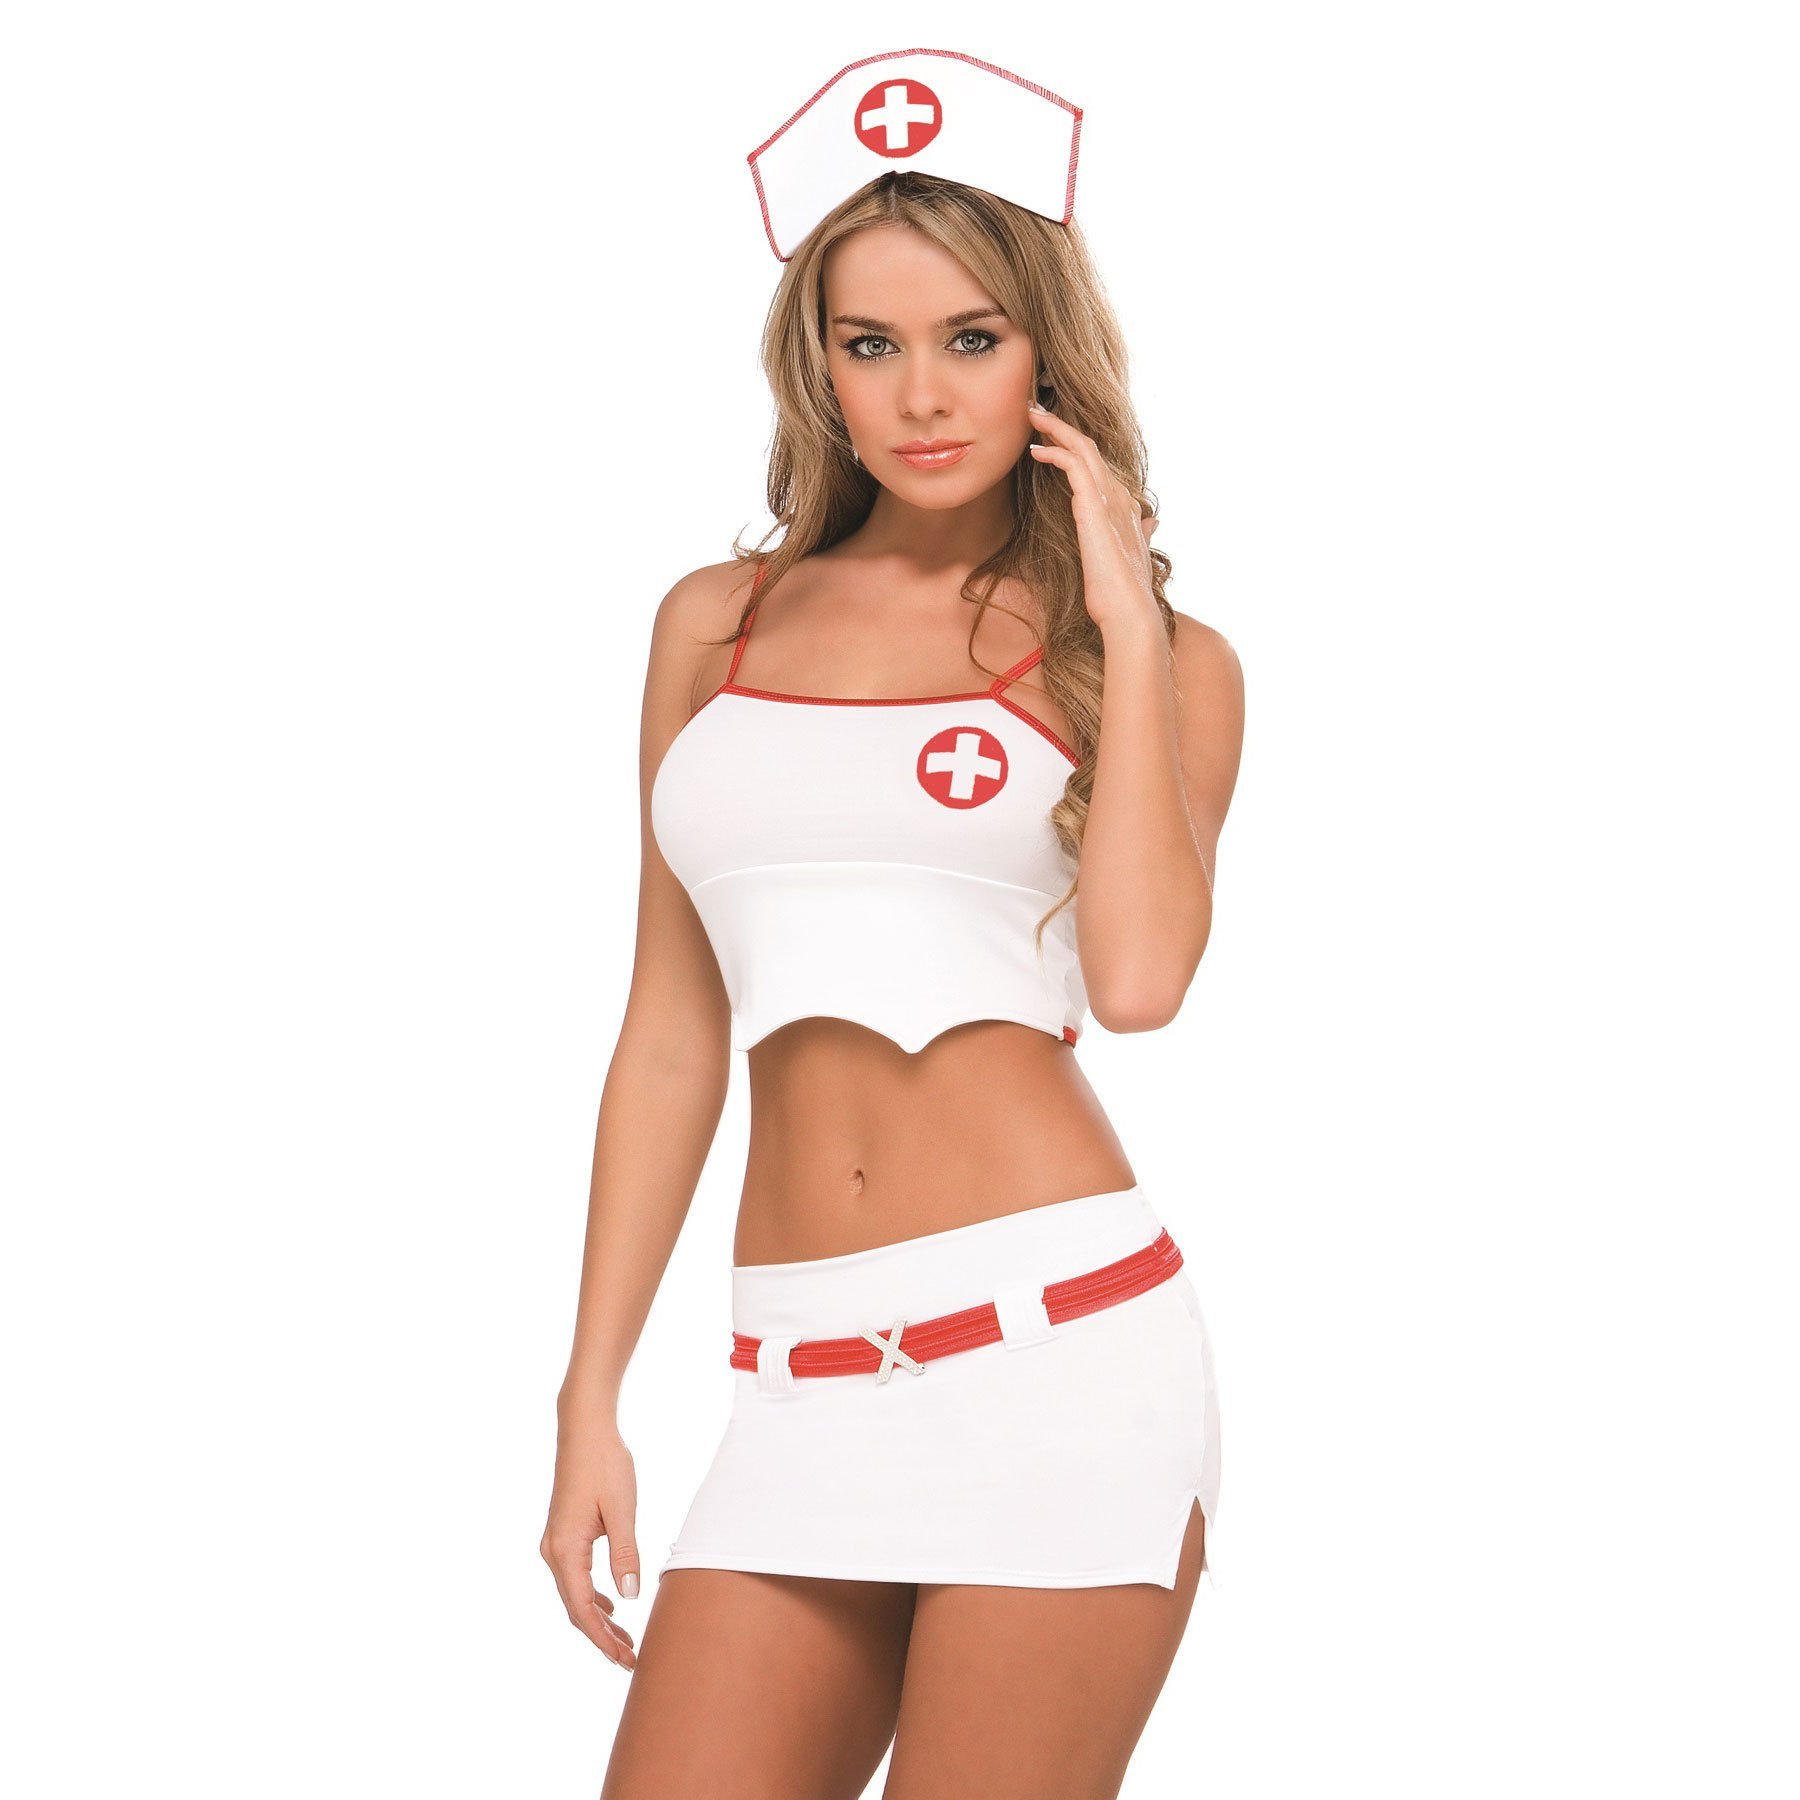 Сексуальная медсестра с классной грудью